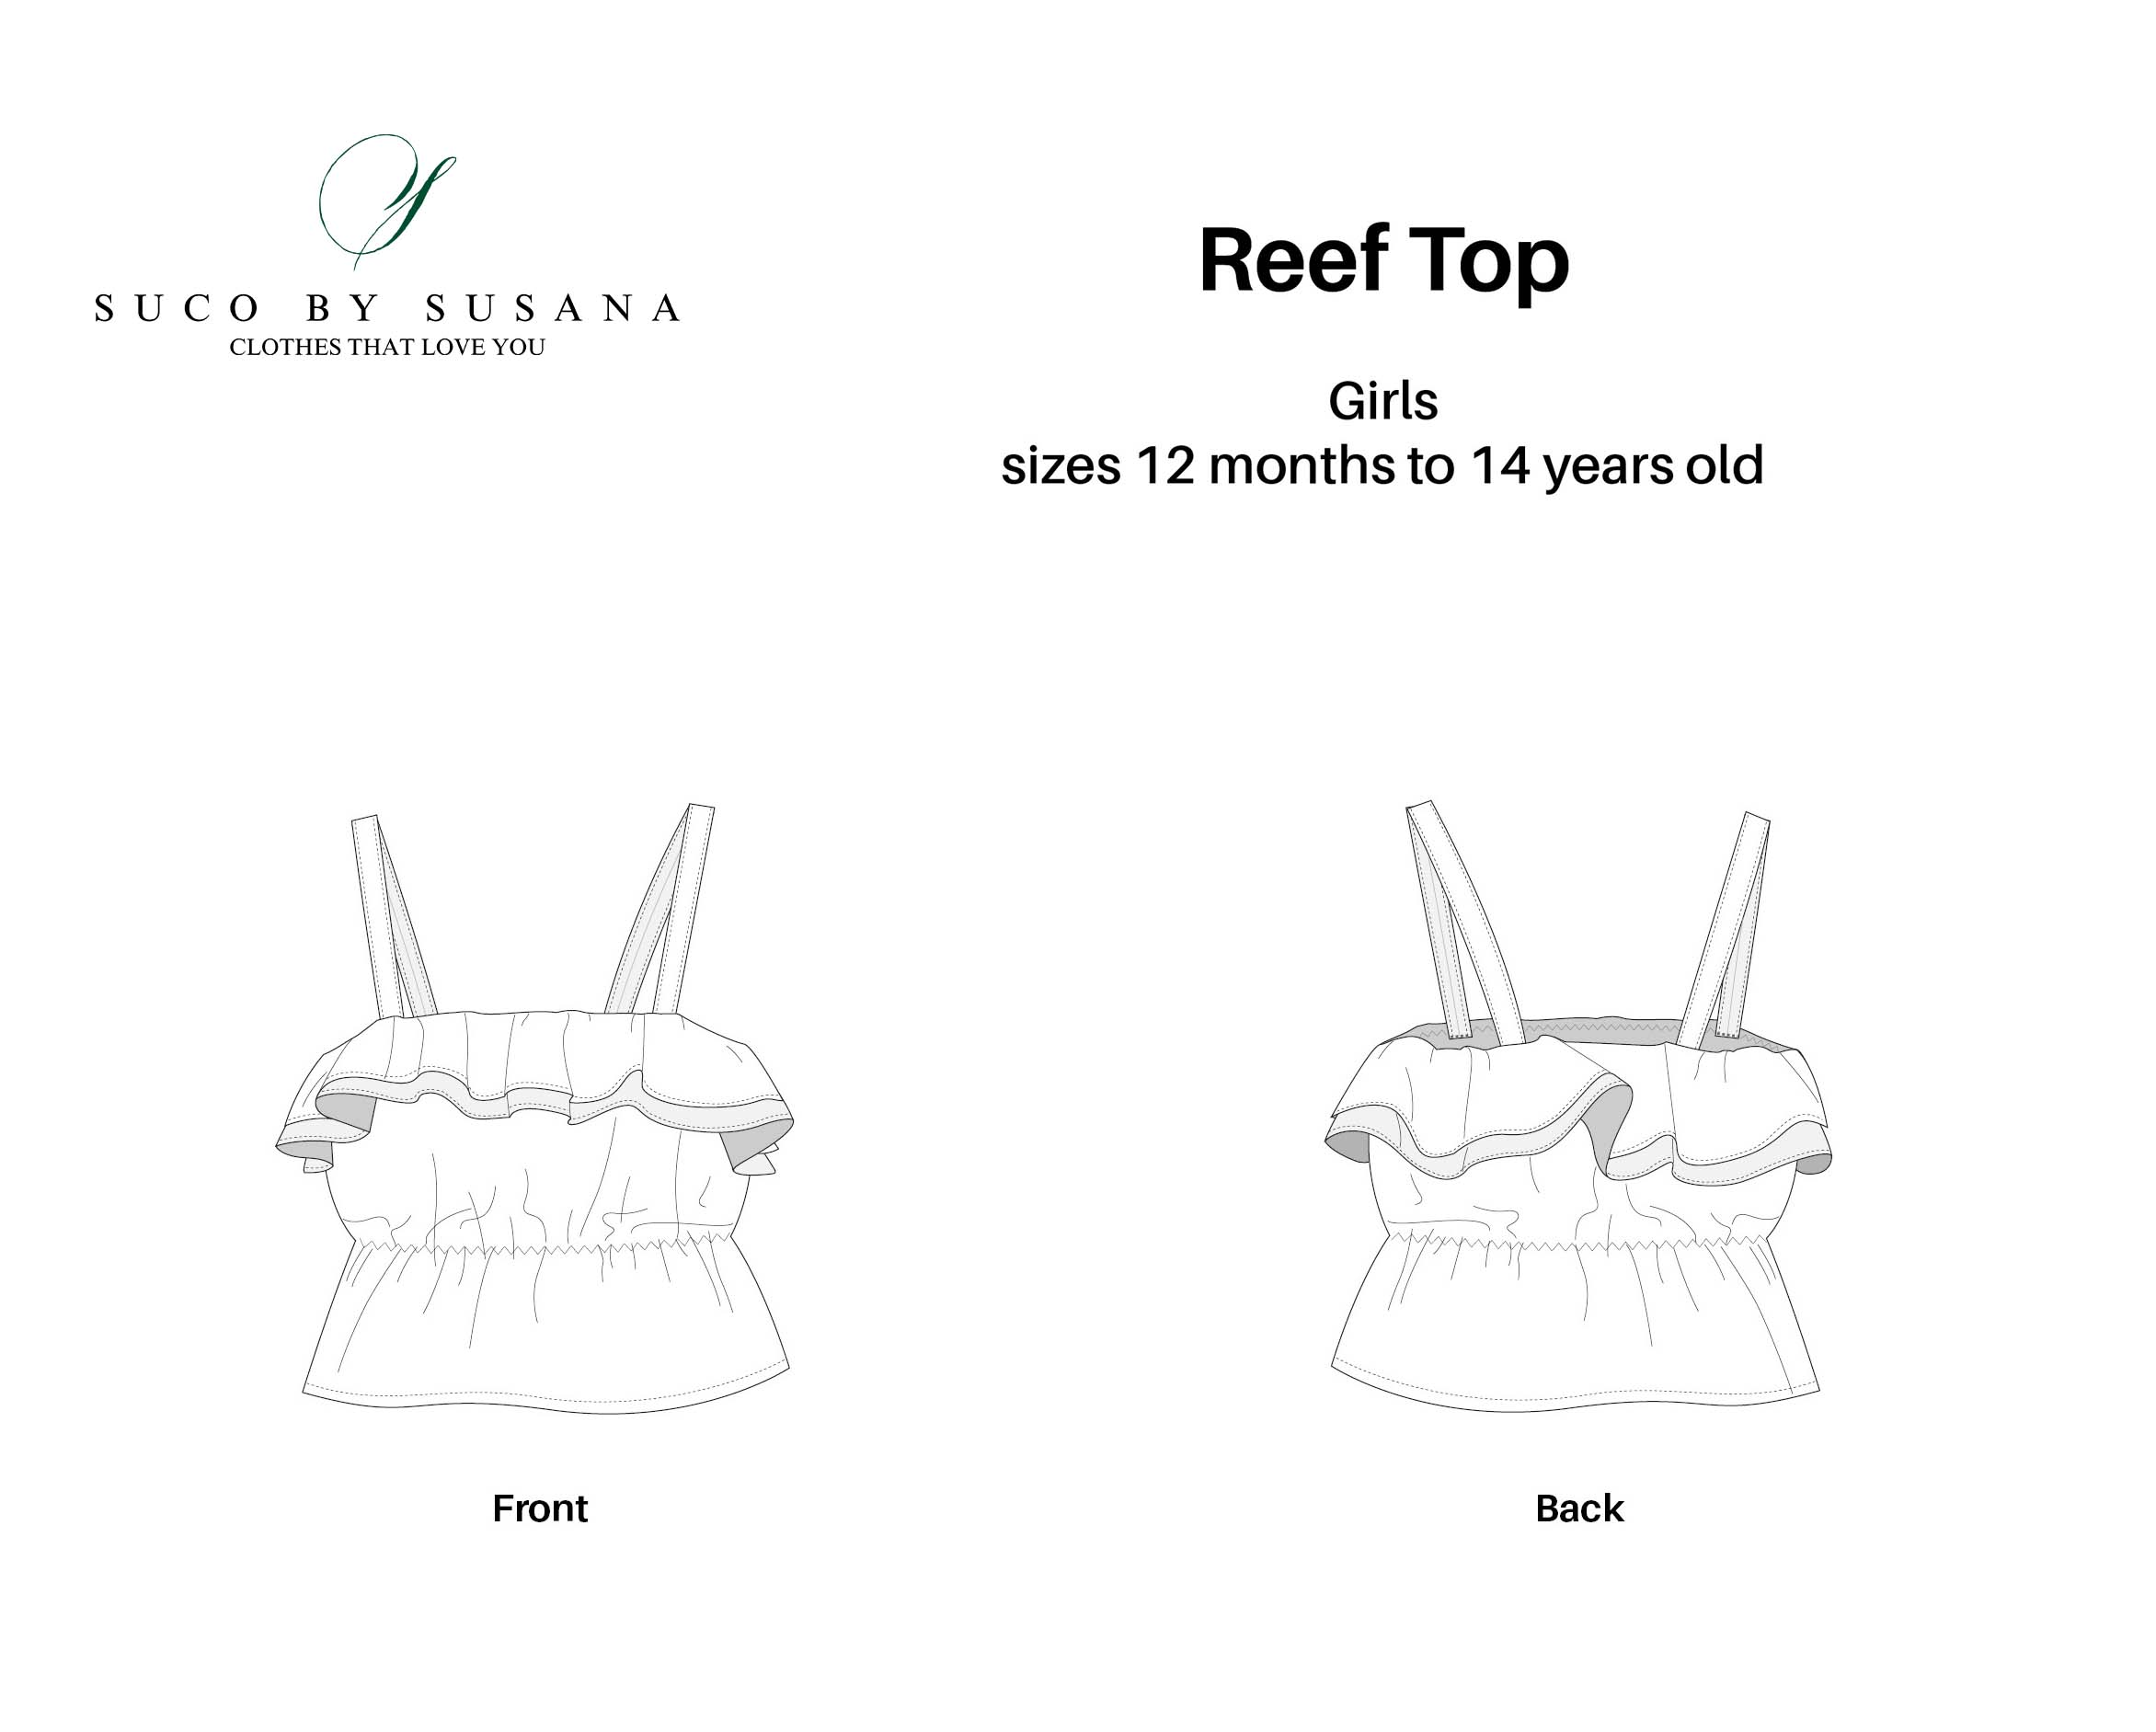 Reef Top sewing pattern